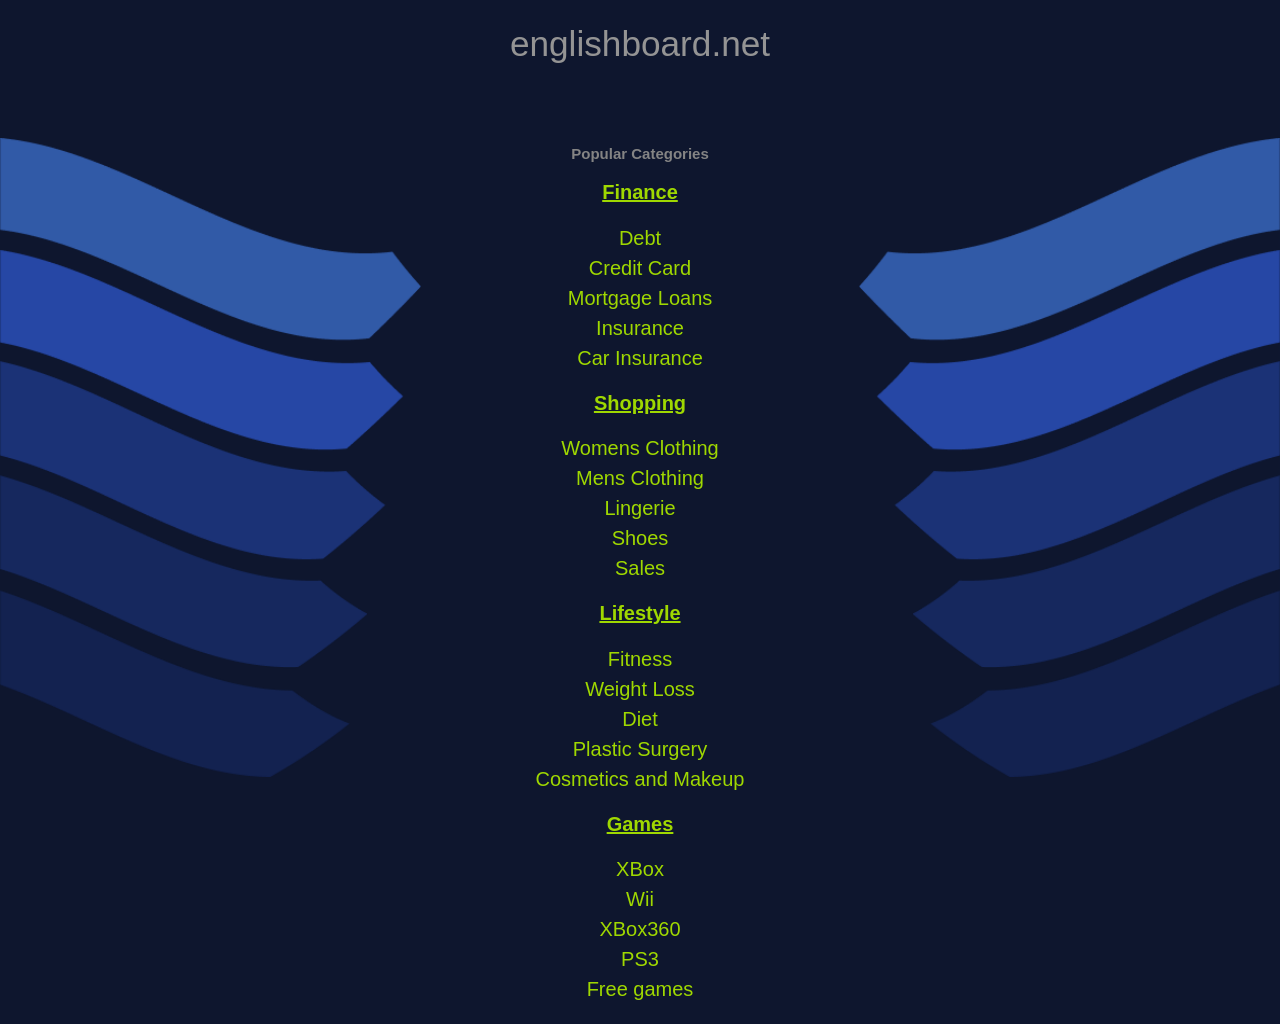 englishboard.net